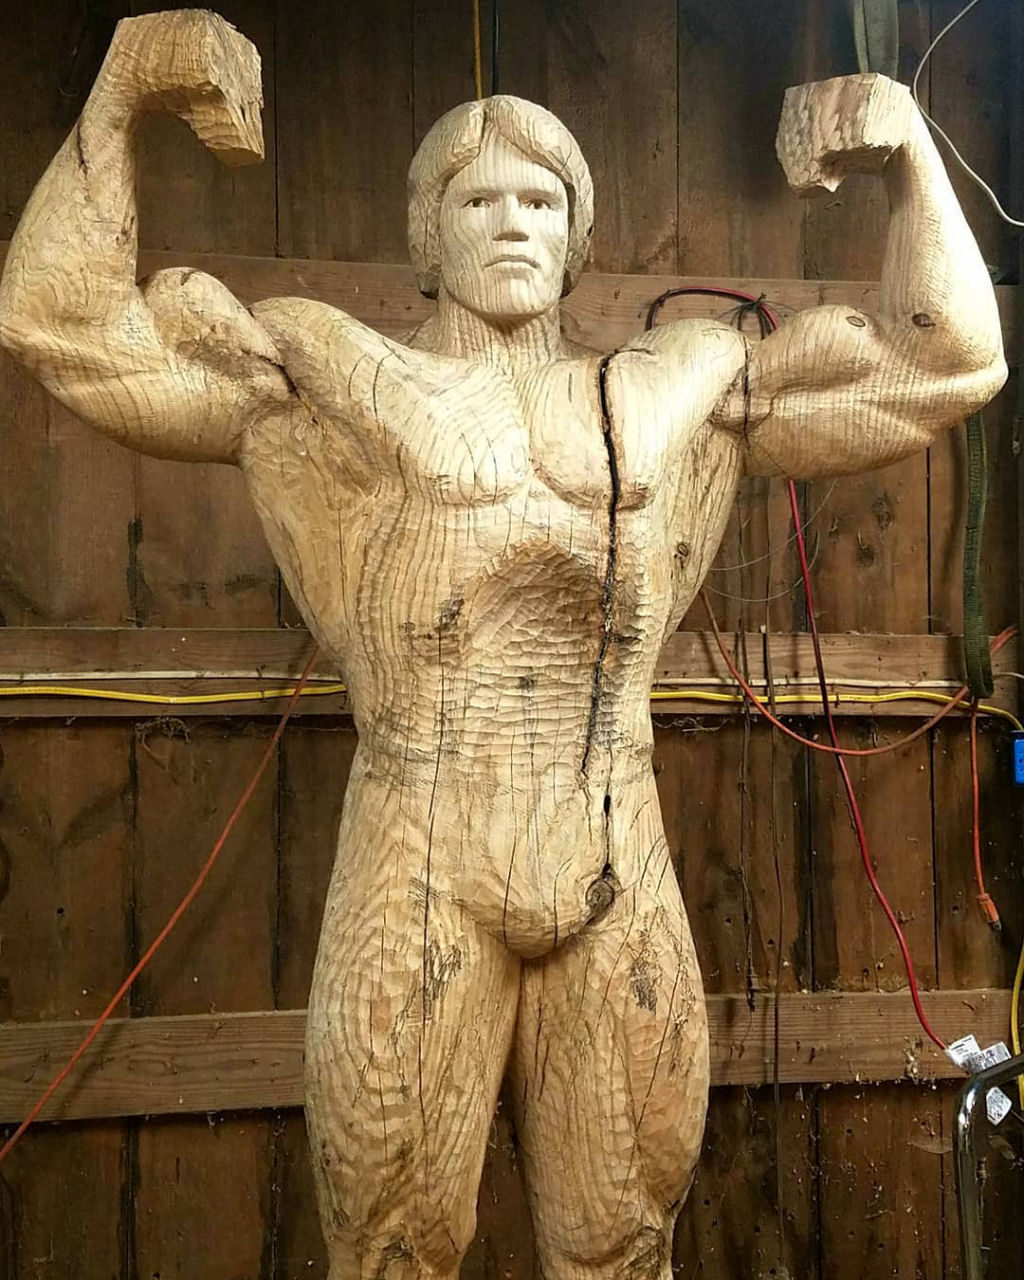 Artista esculpe incrvel escultura em tamanho natural de Schwarzenegger com um nico tronco de rvore 04